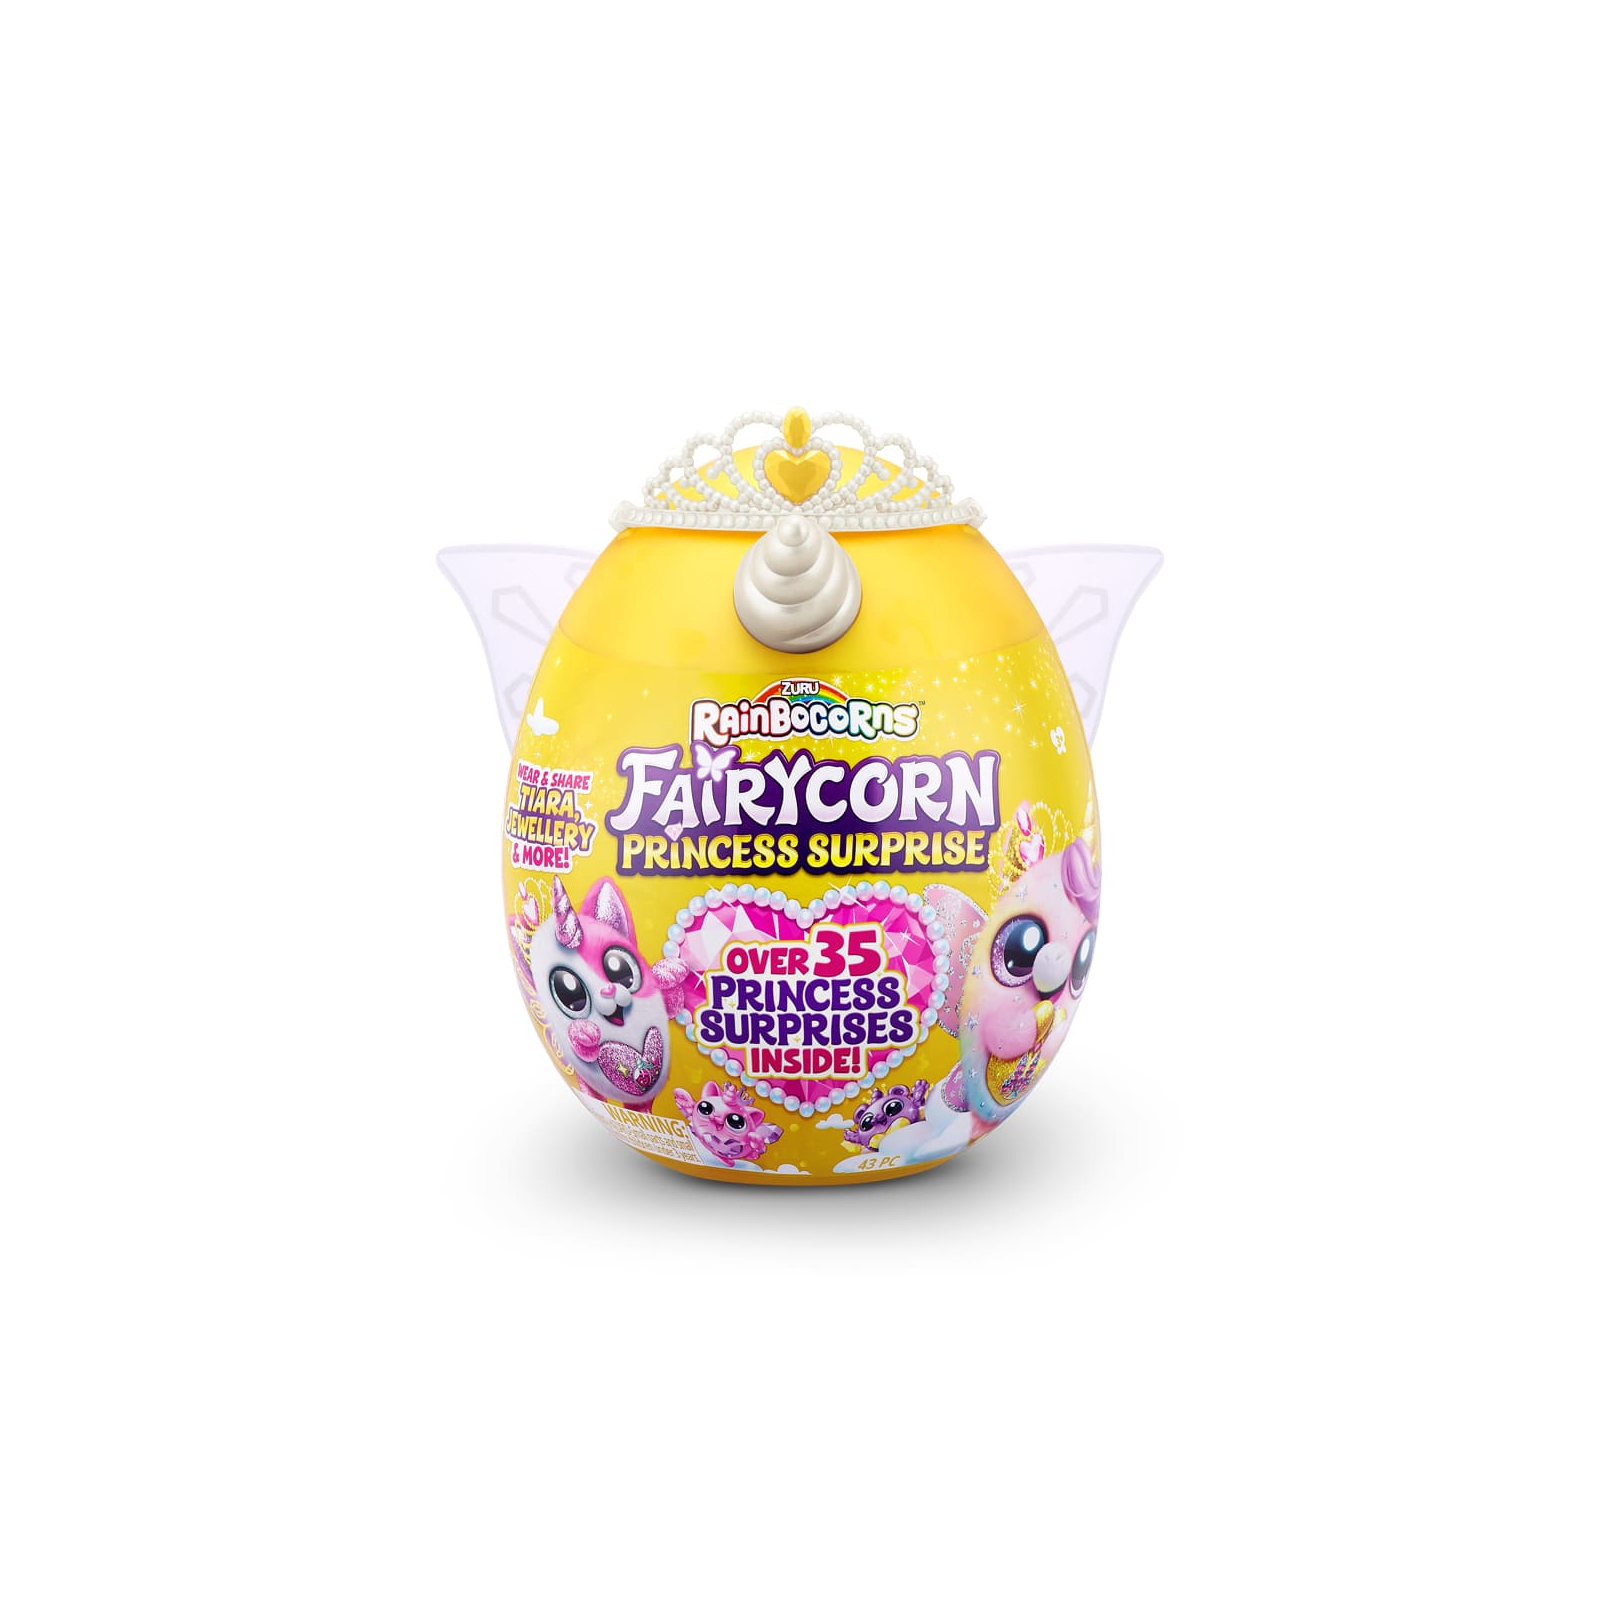 Мягкая игрушка Rainbocorns сюрприз H серия Fairycorn Princess (9281H) изображение 13